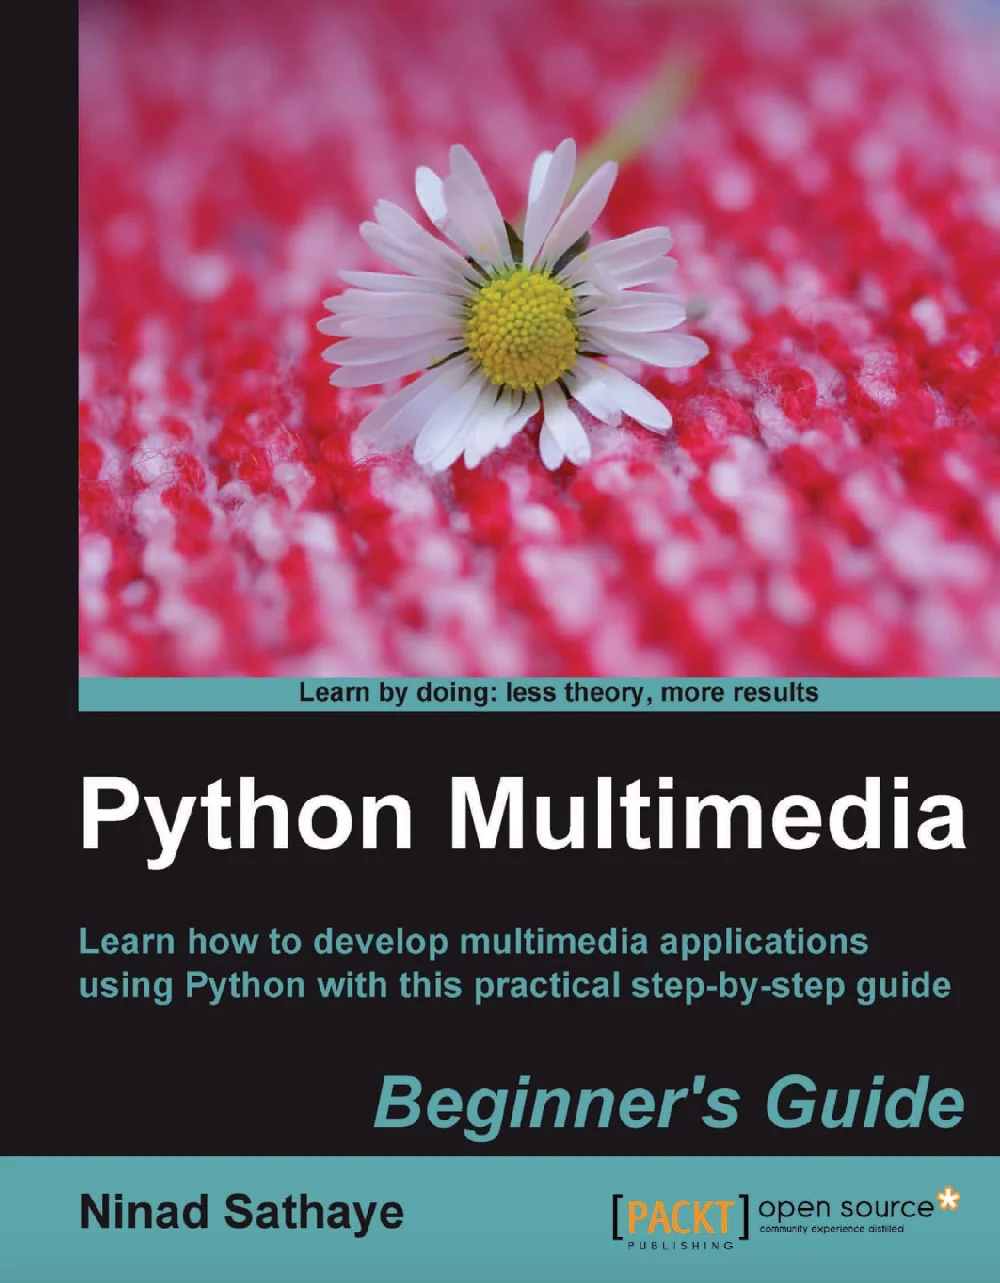 Python Multimedia: Beginner's Guide